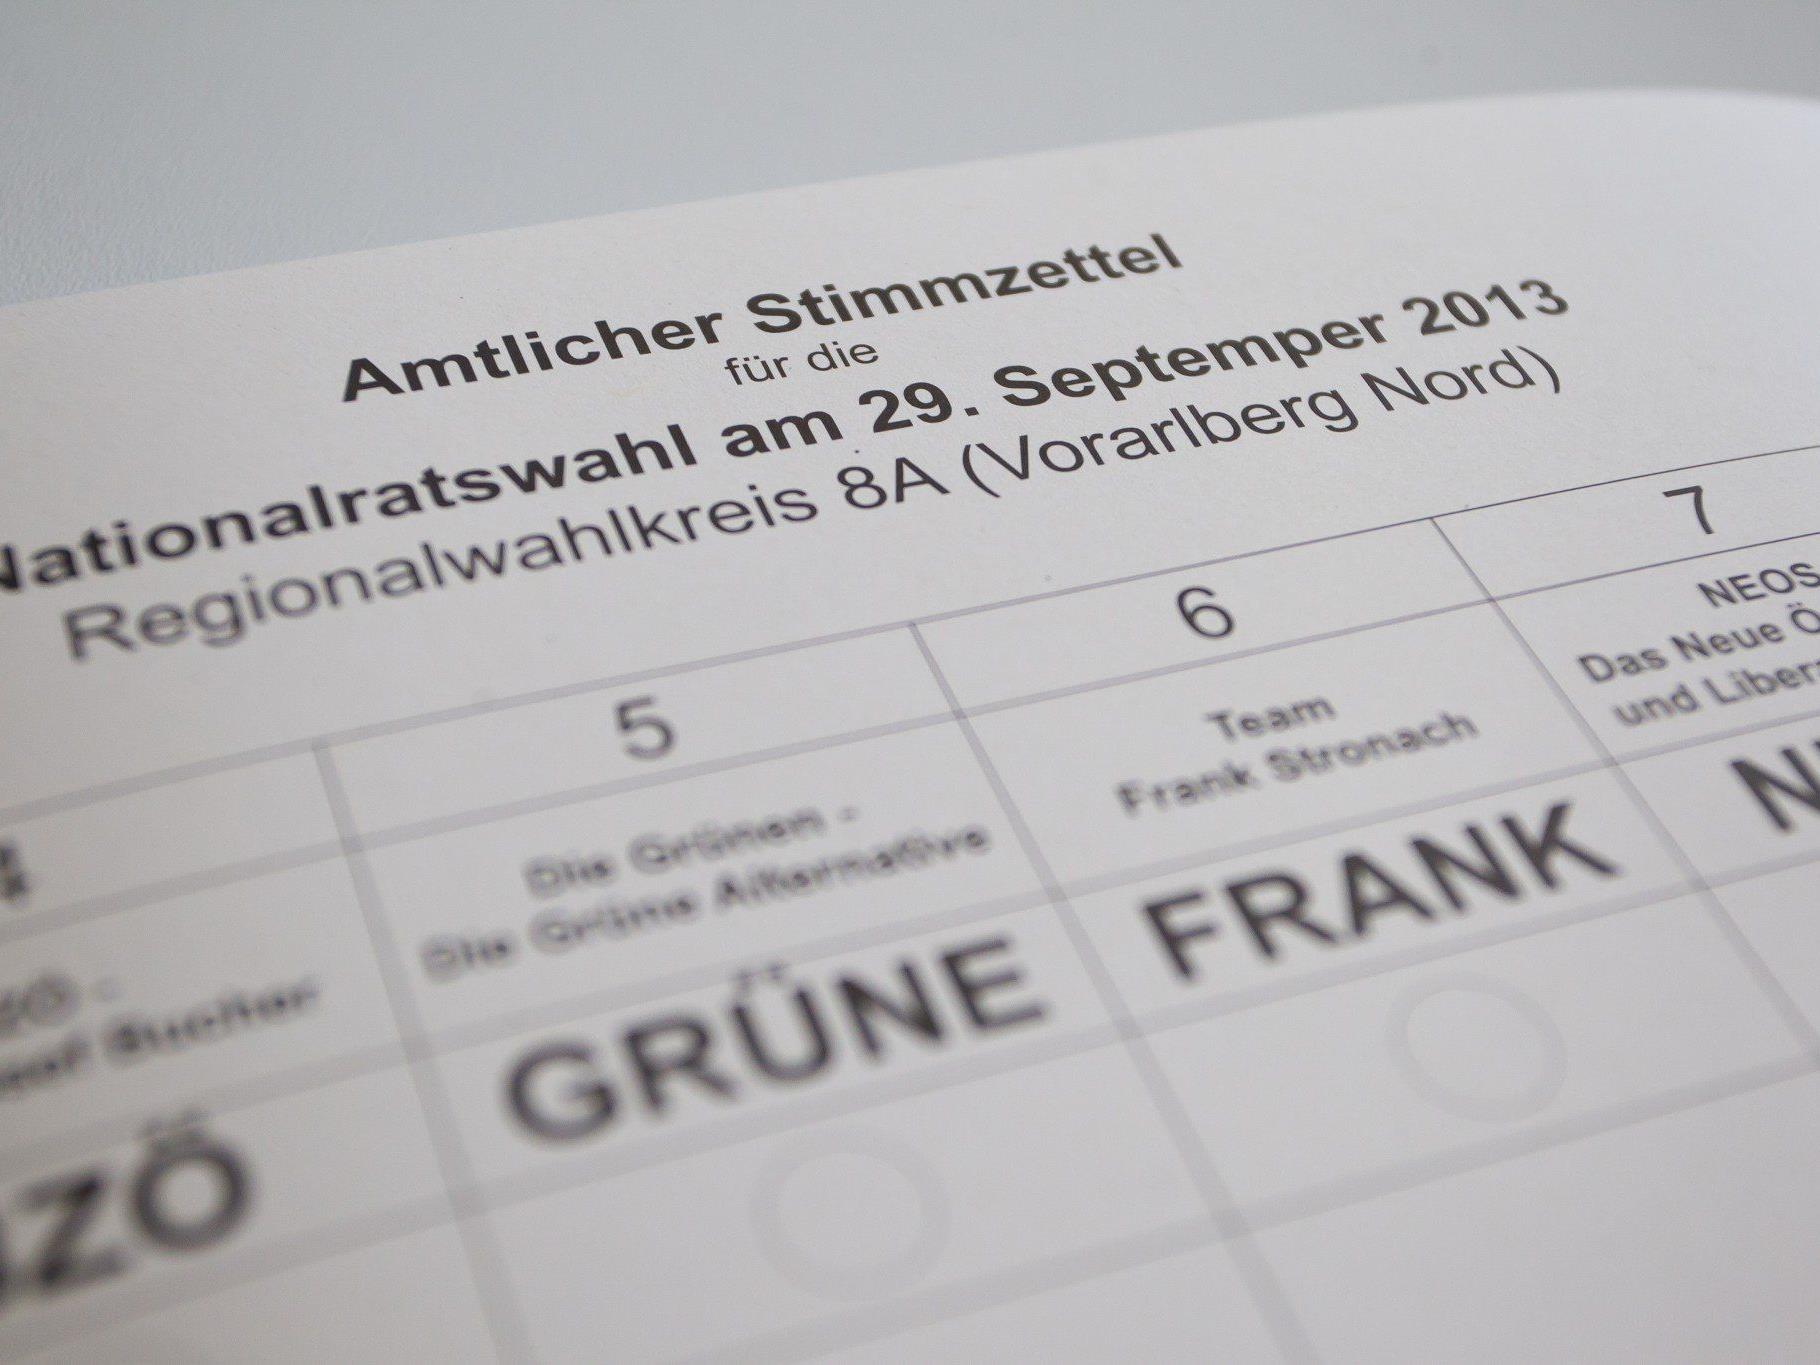 NR-Wahl: Trotz eines Tippfehlers sind die Stimmzettel mit Datum "29. Septemper" gültig.